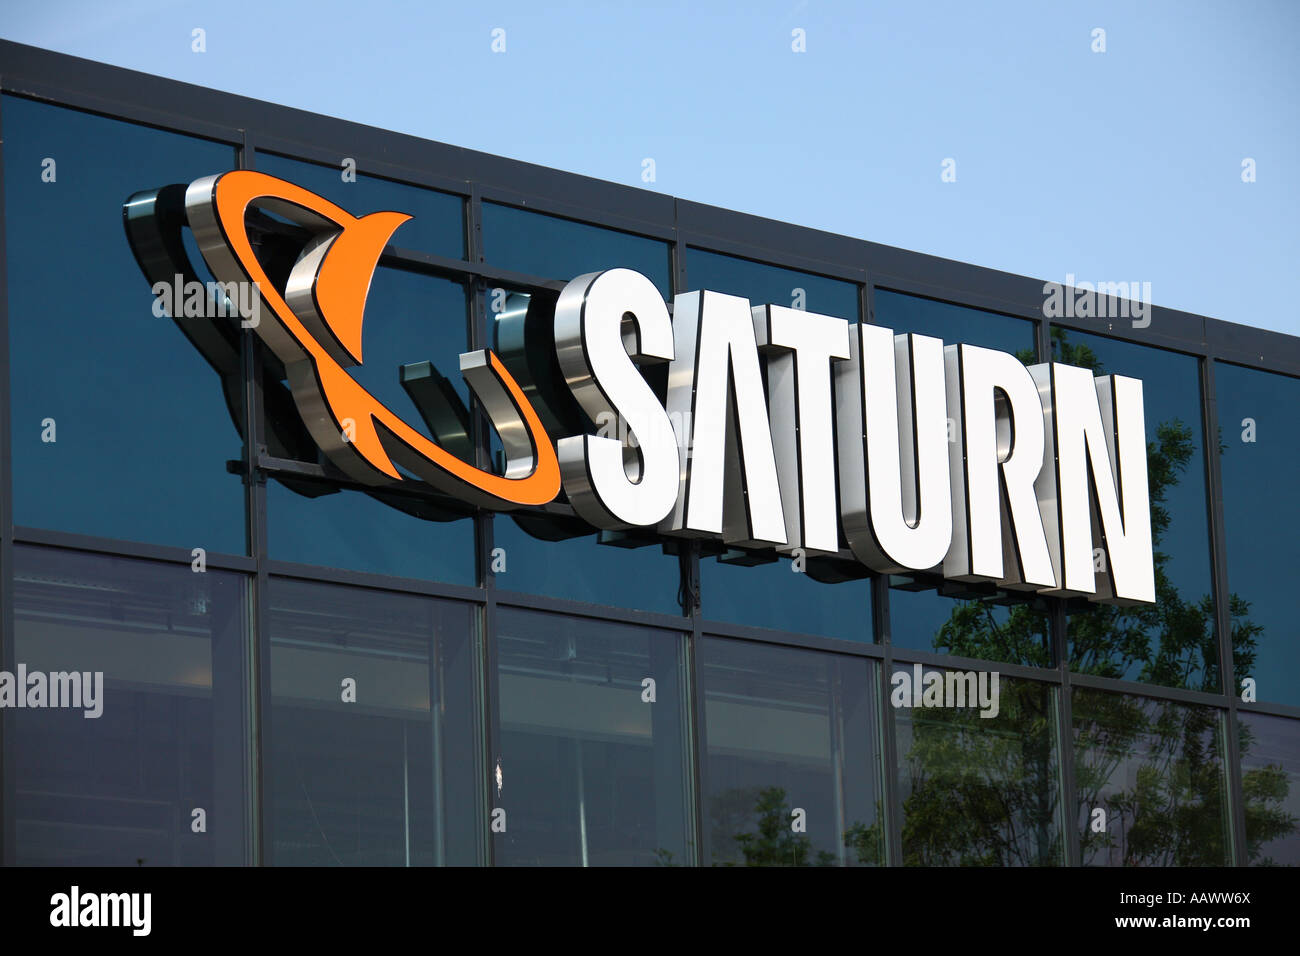 Saturn electronics store, Munich, Germany Stock Photo